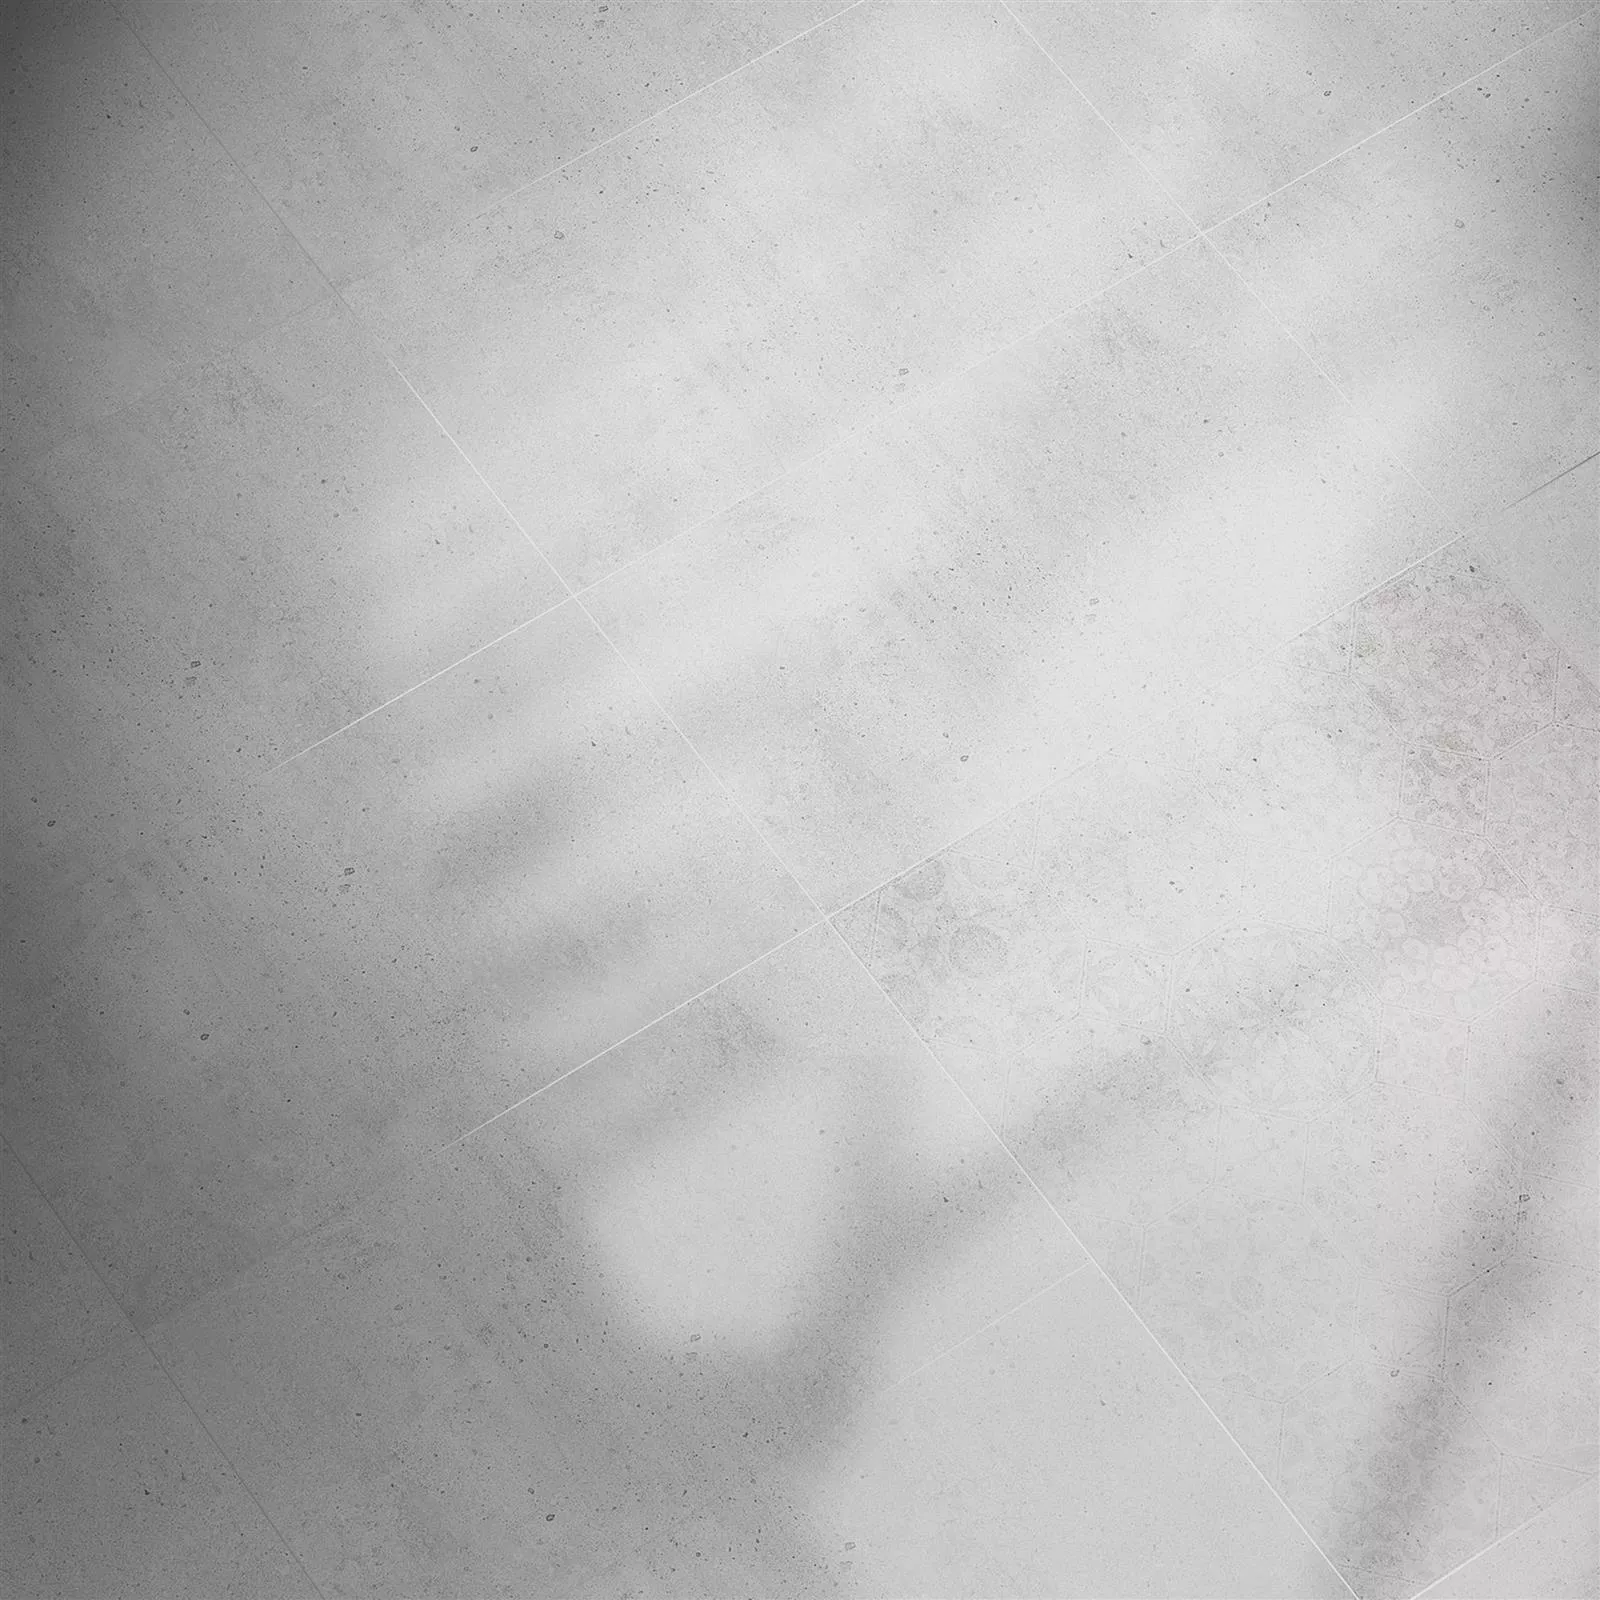 Πλακάκια Δαπέδου Freeland Πέτρινη Όψη R10/B Ανοιχτό Γκρι 60x60cm Ντεκόρ